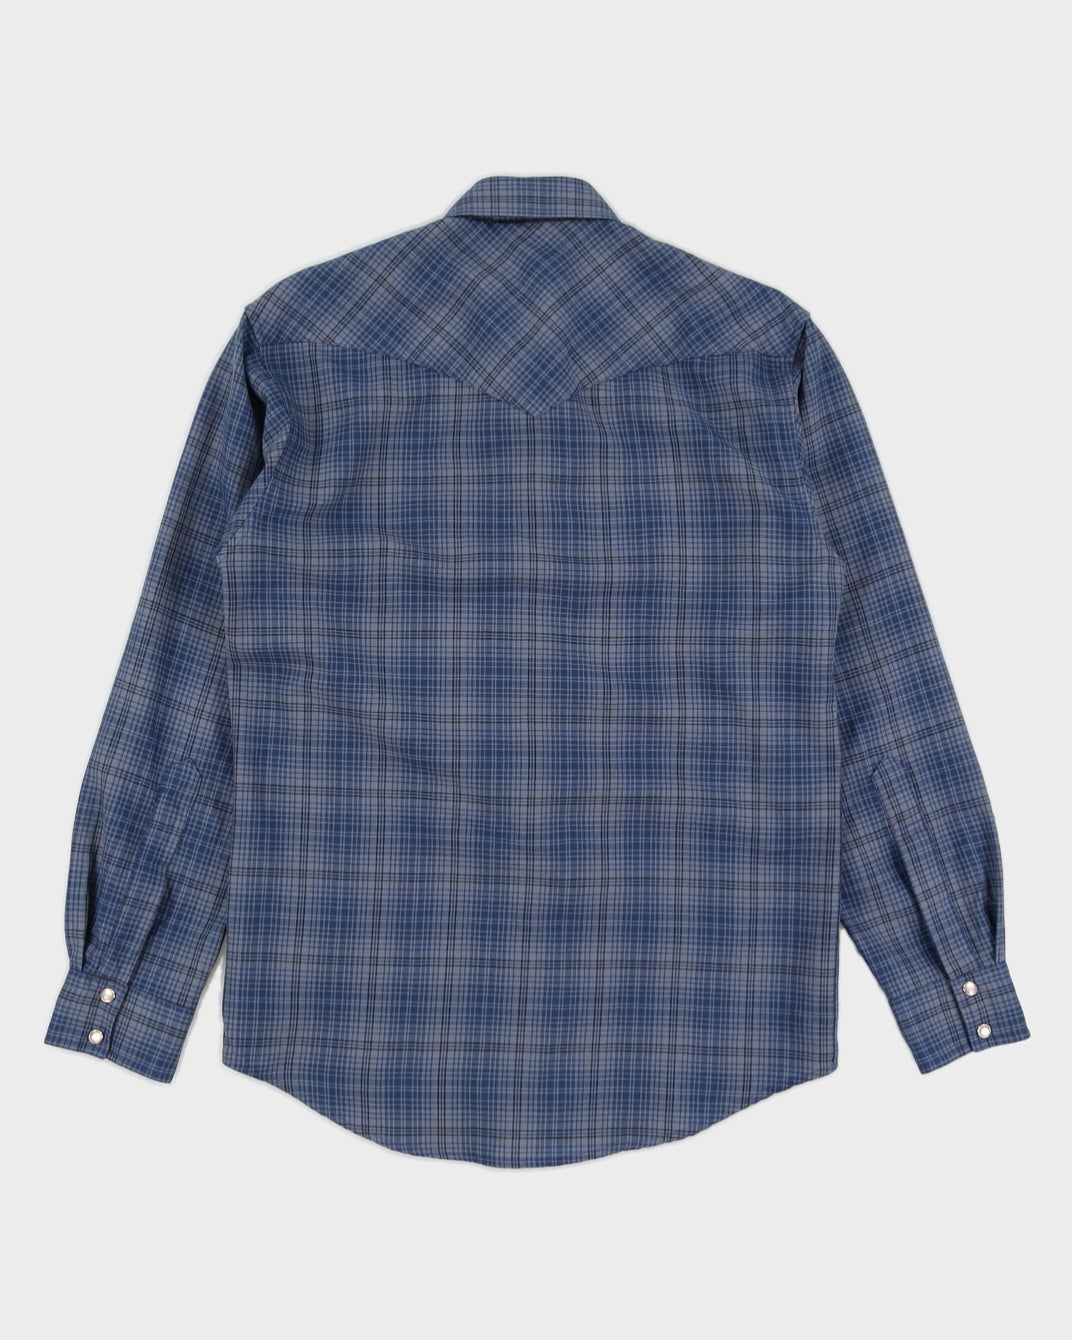 Pendleton Blue Plaid Shirt - M